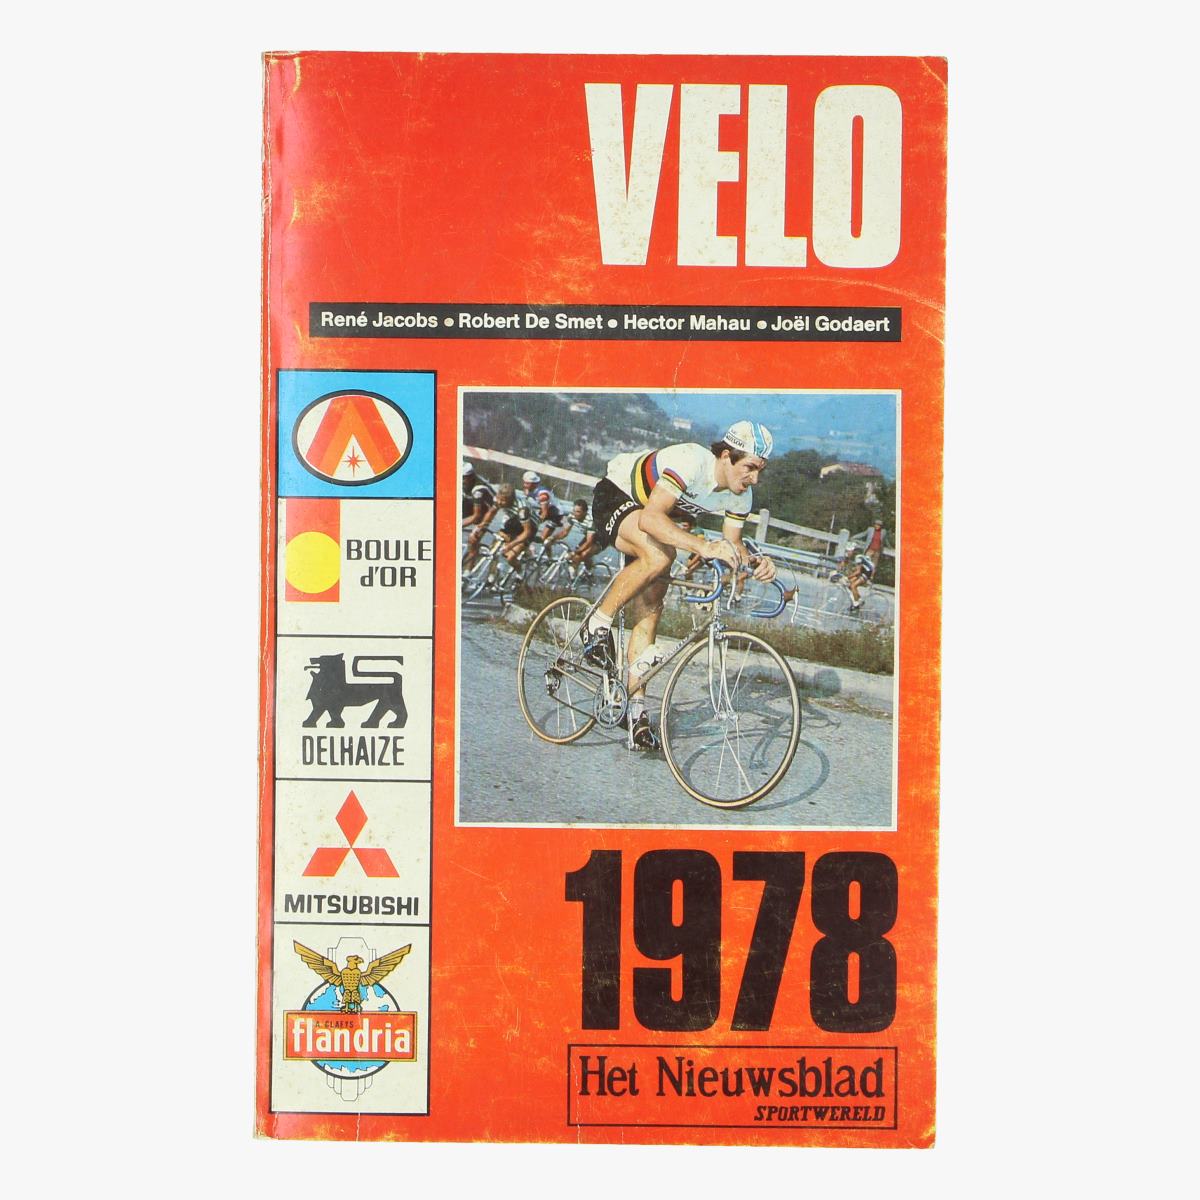 Afbeeldingen van wielrennenVelo het nieuwsblad sportwereld 1978